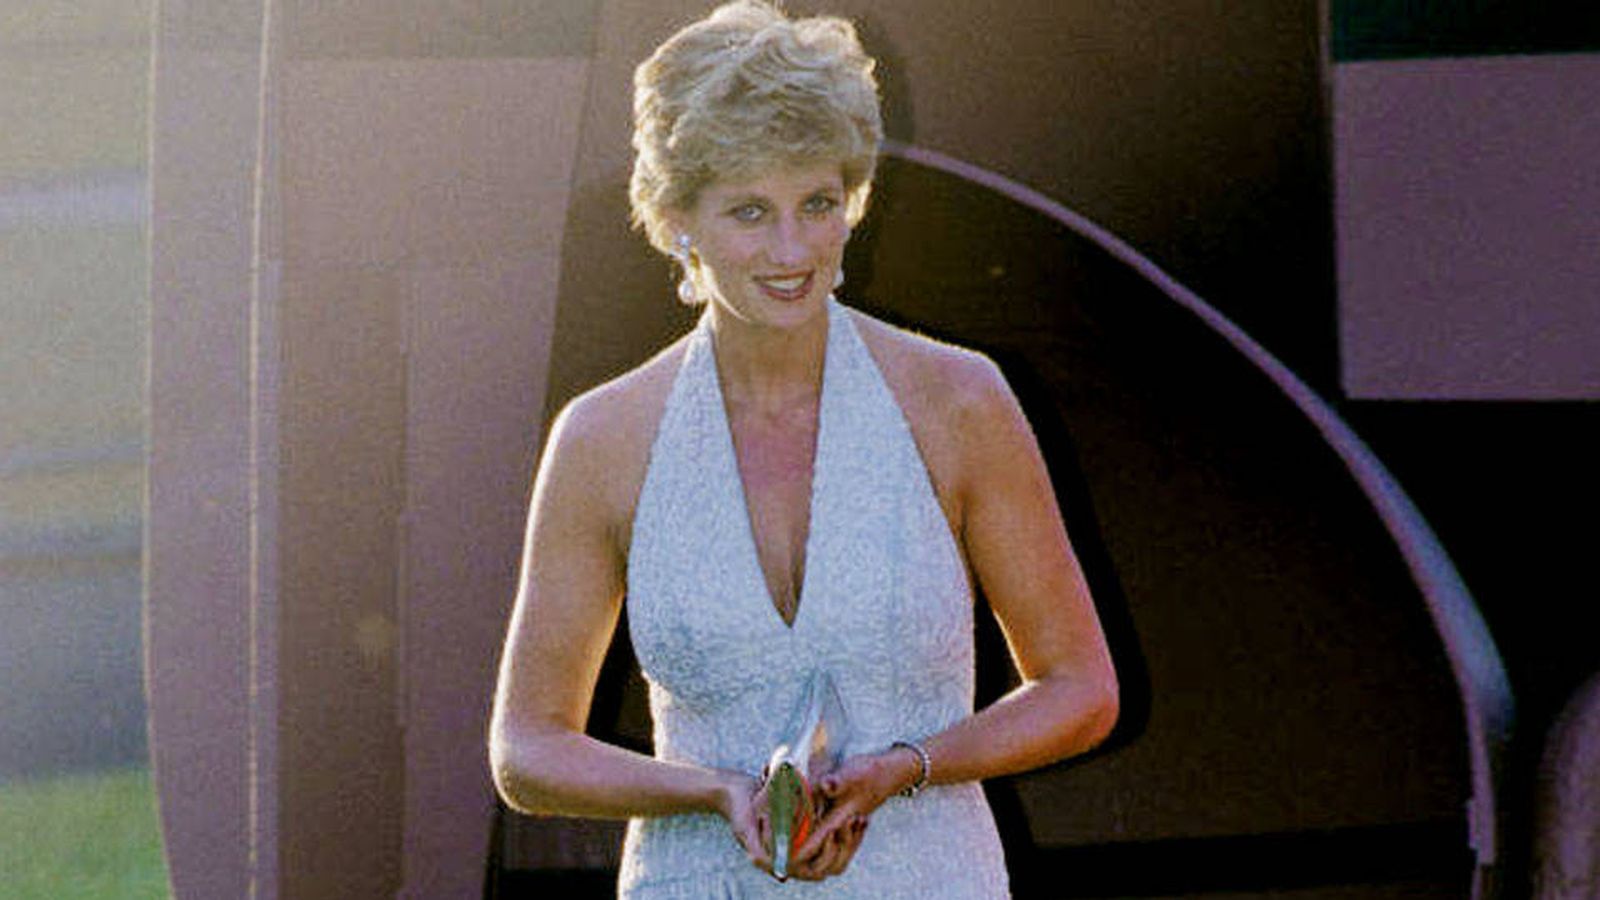 Diana estaría viva hoy": la dura acusación de su amiga contra la BBC